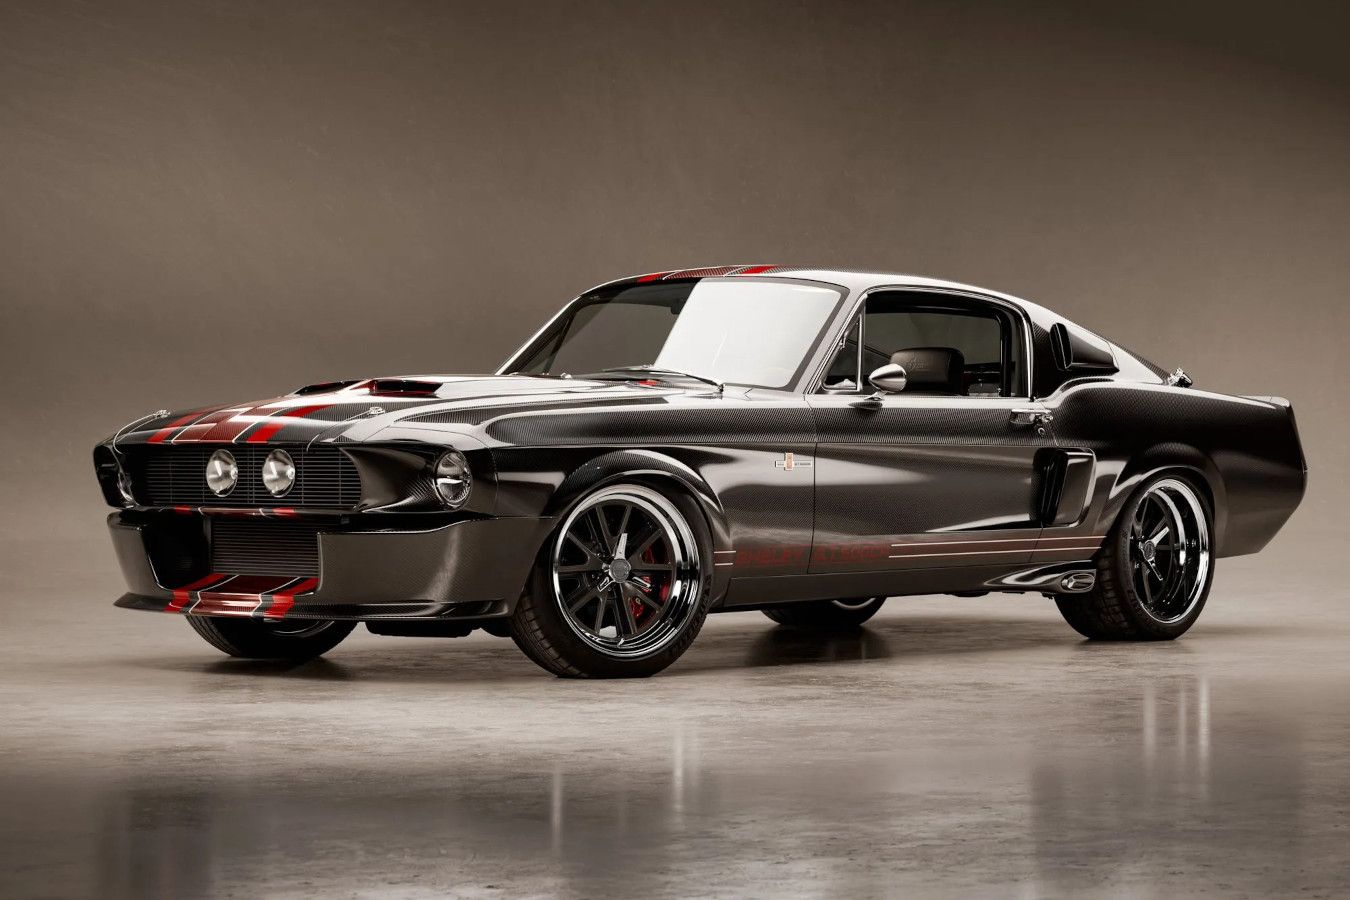 Переиздание легендарного Mustang Shelby выпустят ограниченной серией. Цена — $ 625 тыс.